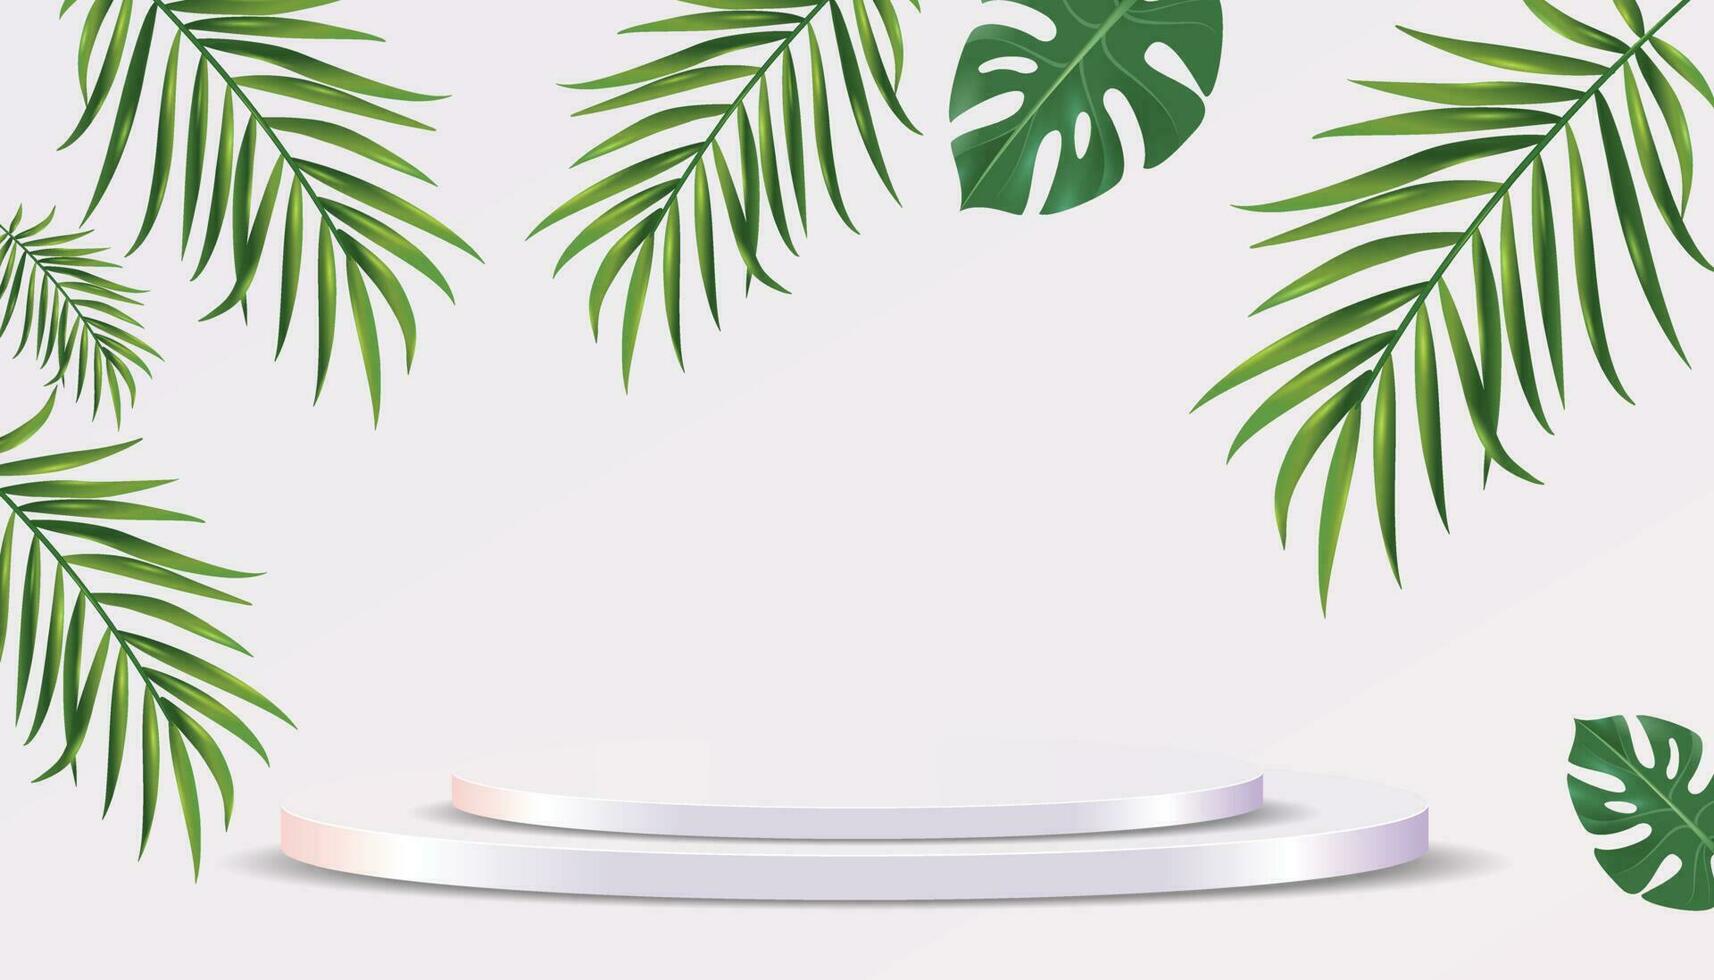 realistisch 3d voetstuk over- zonnig achtergrond met palm bladeren. modieus leeg podium Scherm voor advertenties kunstmatig Product presentatie, mode tijdschrift vector